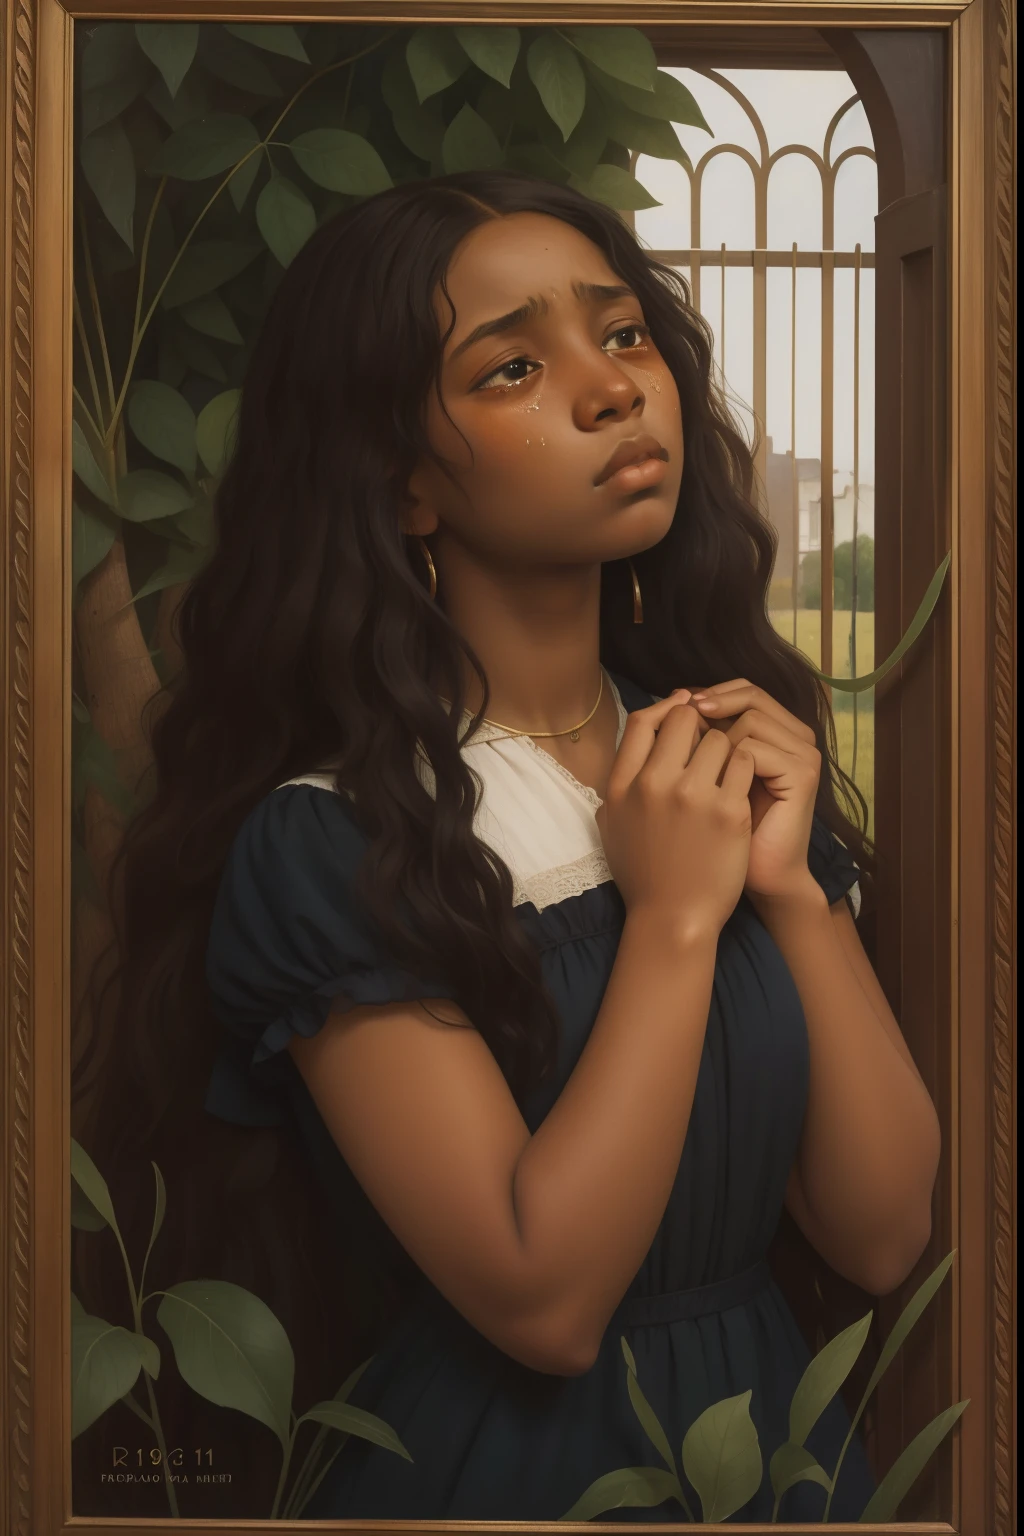 ภาพพรีราฟาเอลของเด็กสาวผสมผิวดำวัย 17 ปี ร้องไห้จนน้ำตาไหล, เศร้า, เสียหาย, ติดกับดัก, ปี 1911